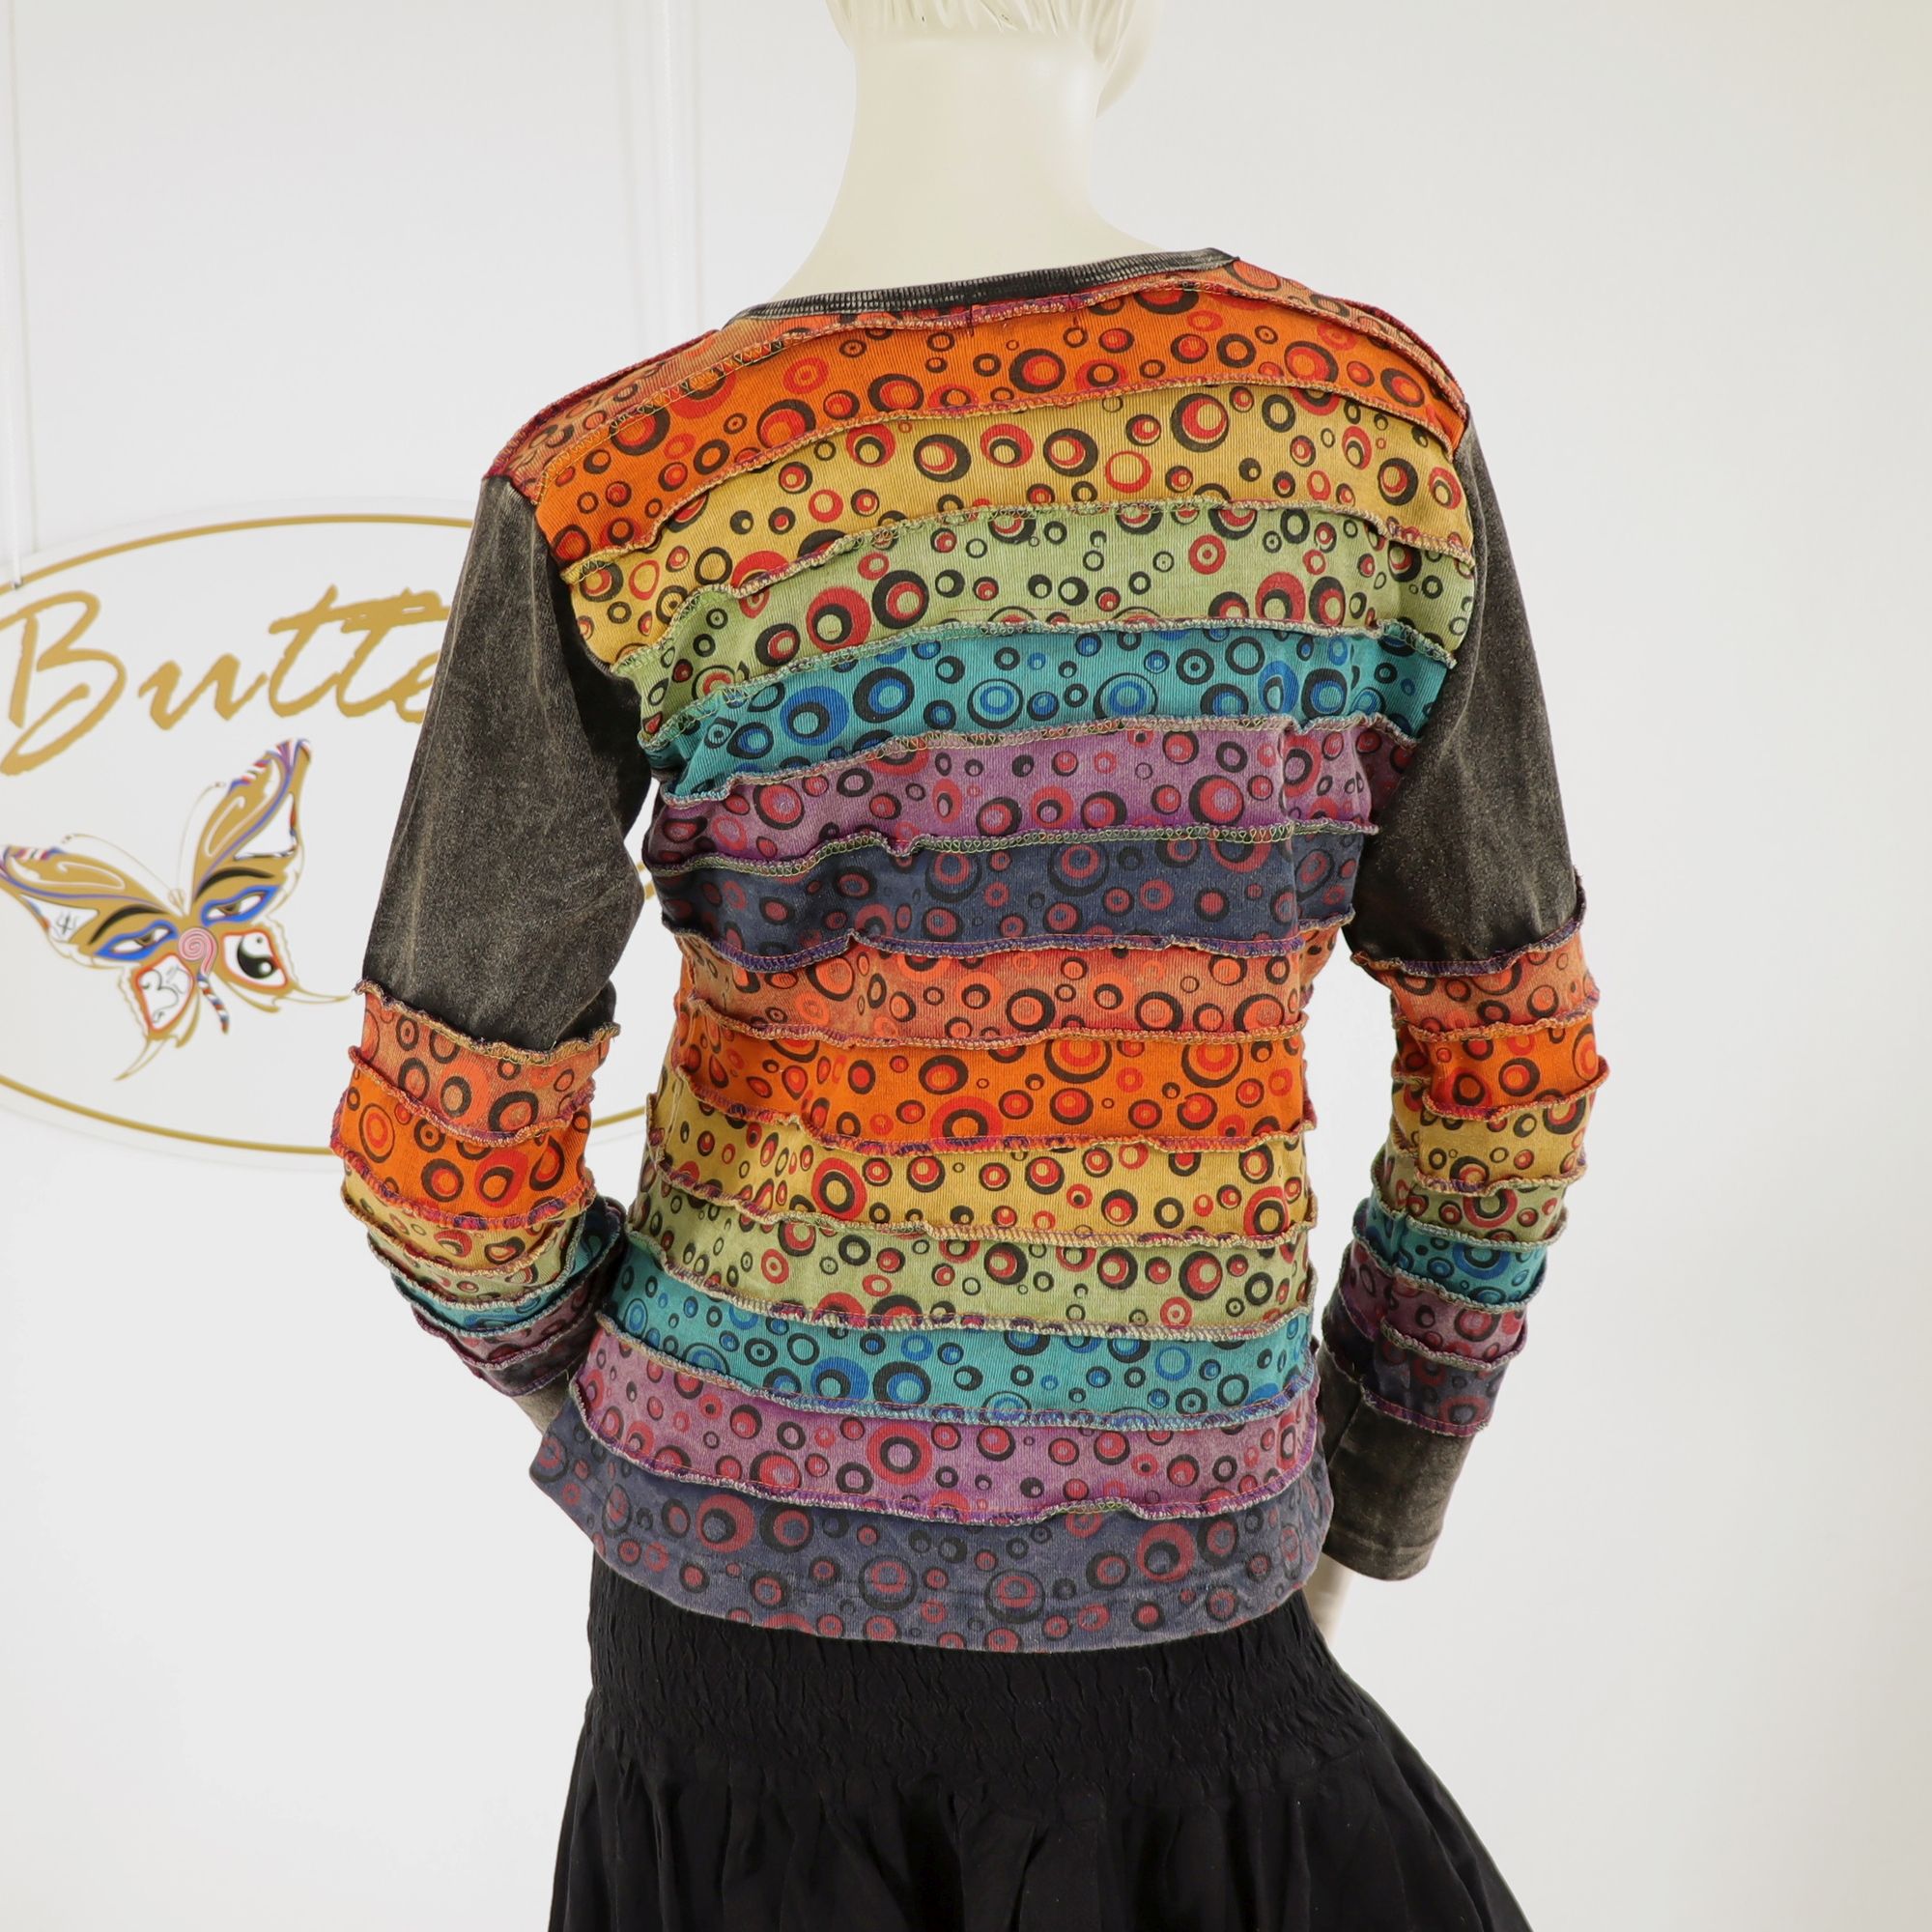 Shirt im bunten Patchwork Design - 100% Baumwolle - bunter Regenbogen - farbenfroh, flippig, fantastisch - Dein Langarm-Shirt für bunte Herbstabende - Fair gehandelt aus Nepal